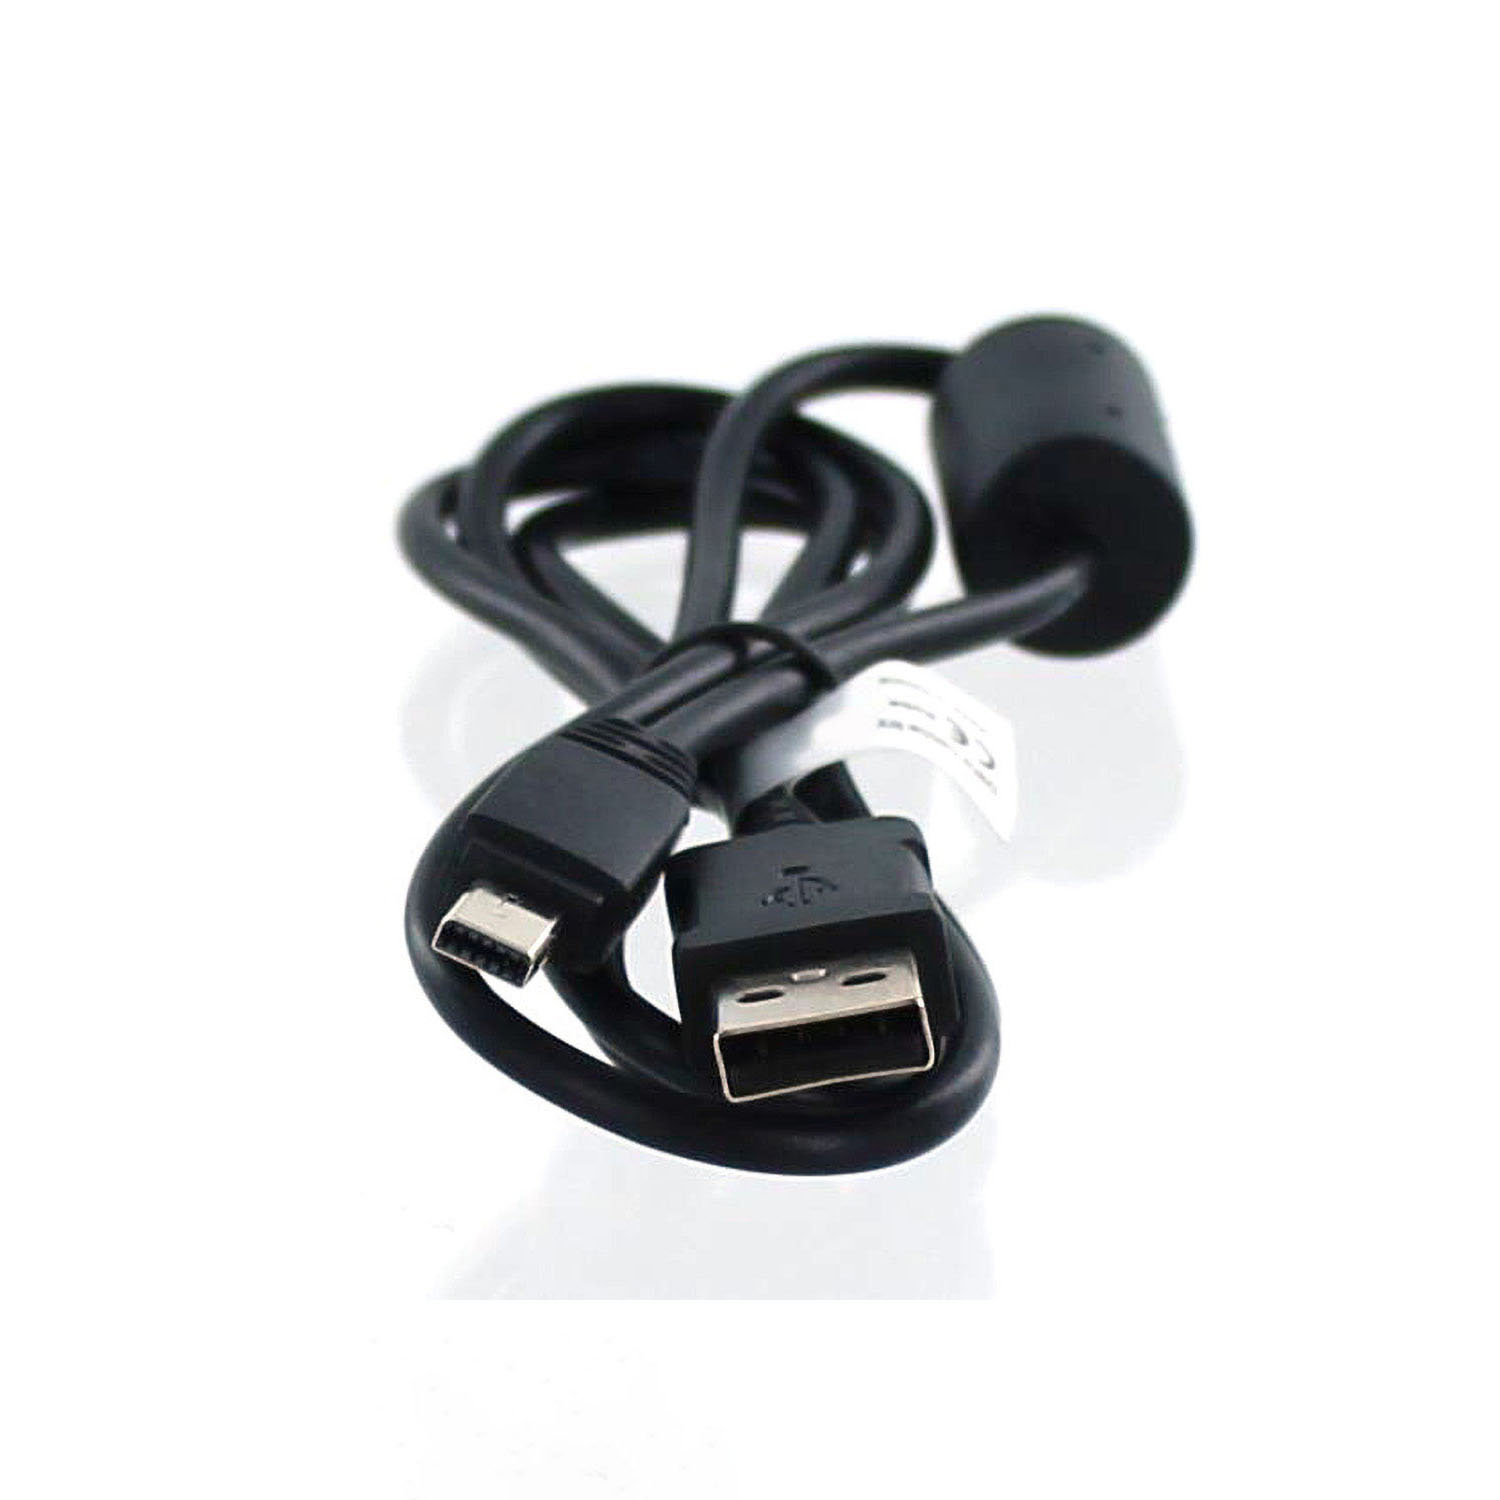 MOBILOTEC USB-Datenkabel kompatibel mit Exilim schwarz EX-Z77 Casio, Zubehör Casio